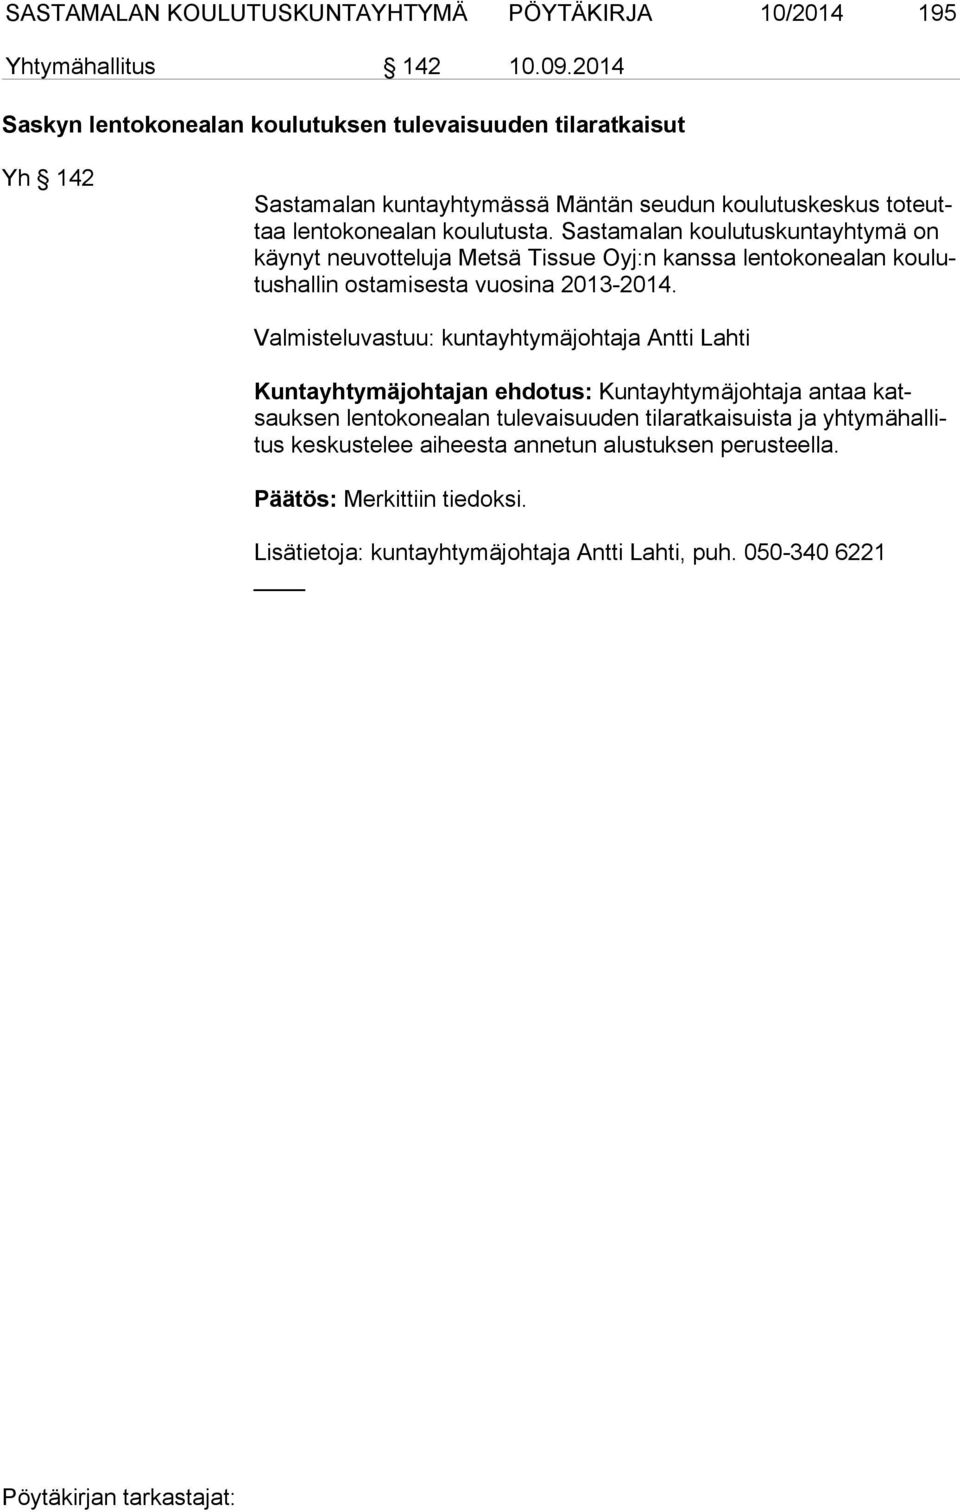 Sastamalan koulutuskuntayhtymä on käy nyt neuvotteluja Metsä Tissue Oyj:n kanssa lentokonealan kou lutus hal lin ostamisesta vuosina 2013-2014.